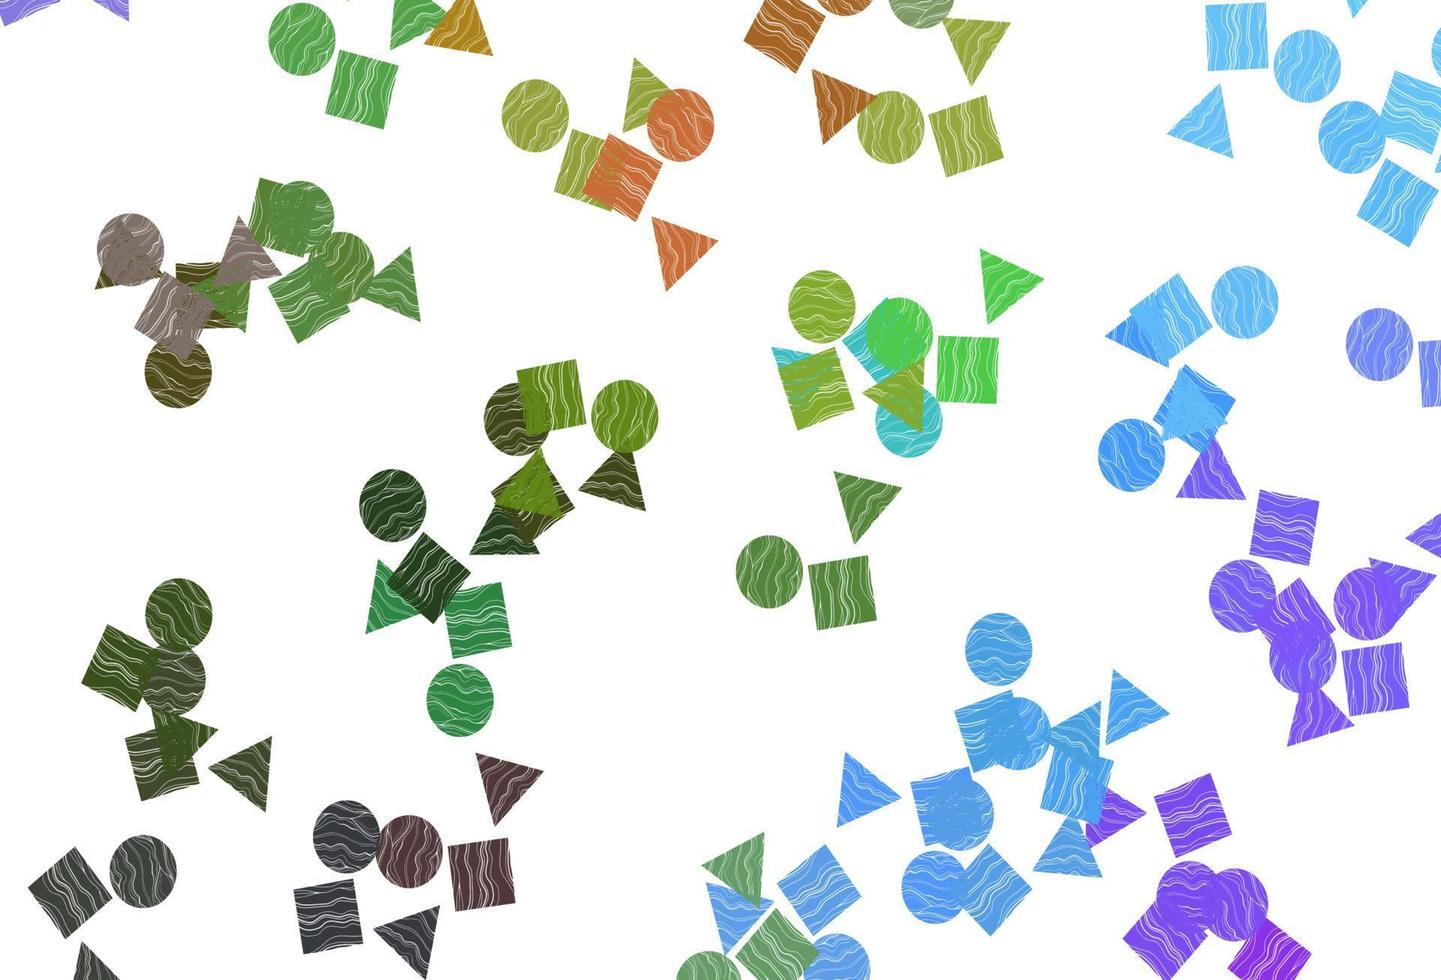 lumière multicolore, texture vectorielle arc-en-ciel dans un style poly avec cercles, cubes. vecteur